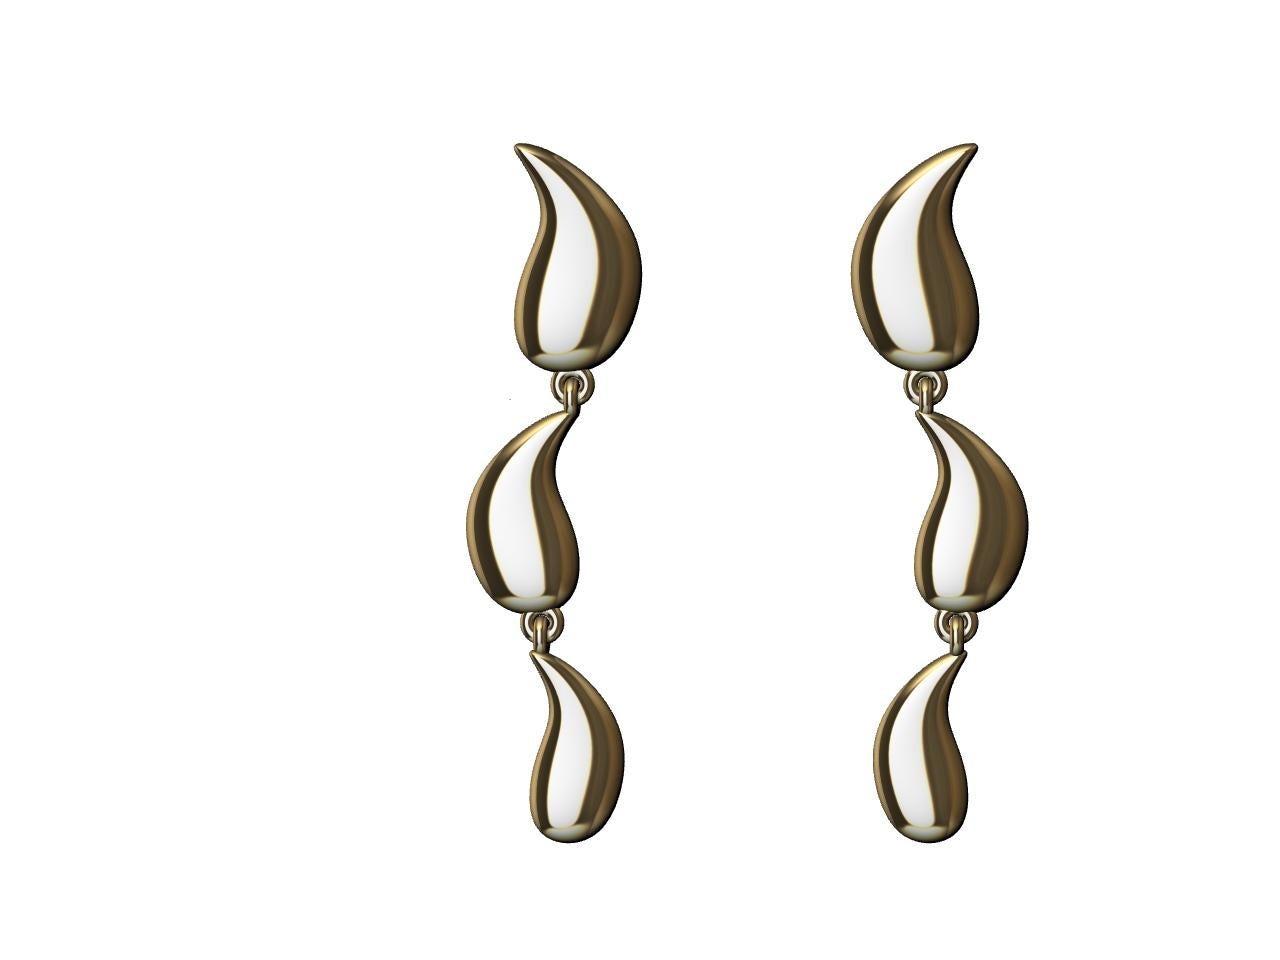 boucles d'oreilles en or jaune 18 carats S Curve Dangle Drip, Thomas Kurilla, designer de Tiffany, présente la nouvelle collection Light , Water, Mind. 2 hernies discales en 2018, et la découverte de la Cyrothérapie en 2020. Cette passion pour la